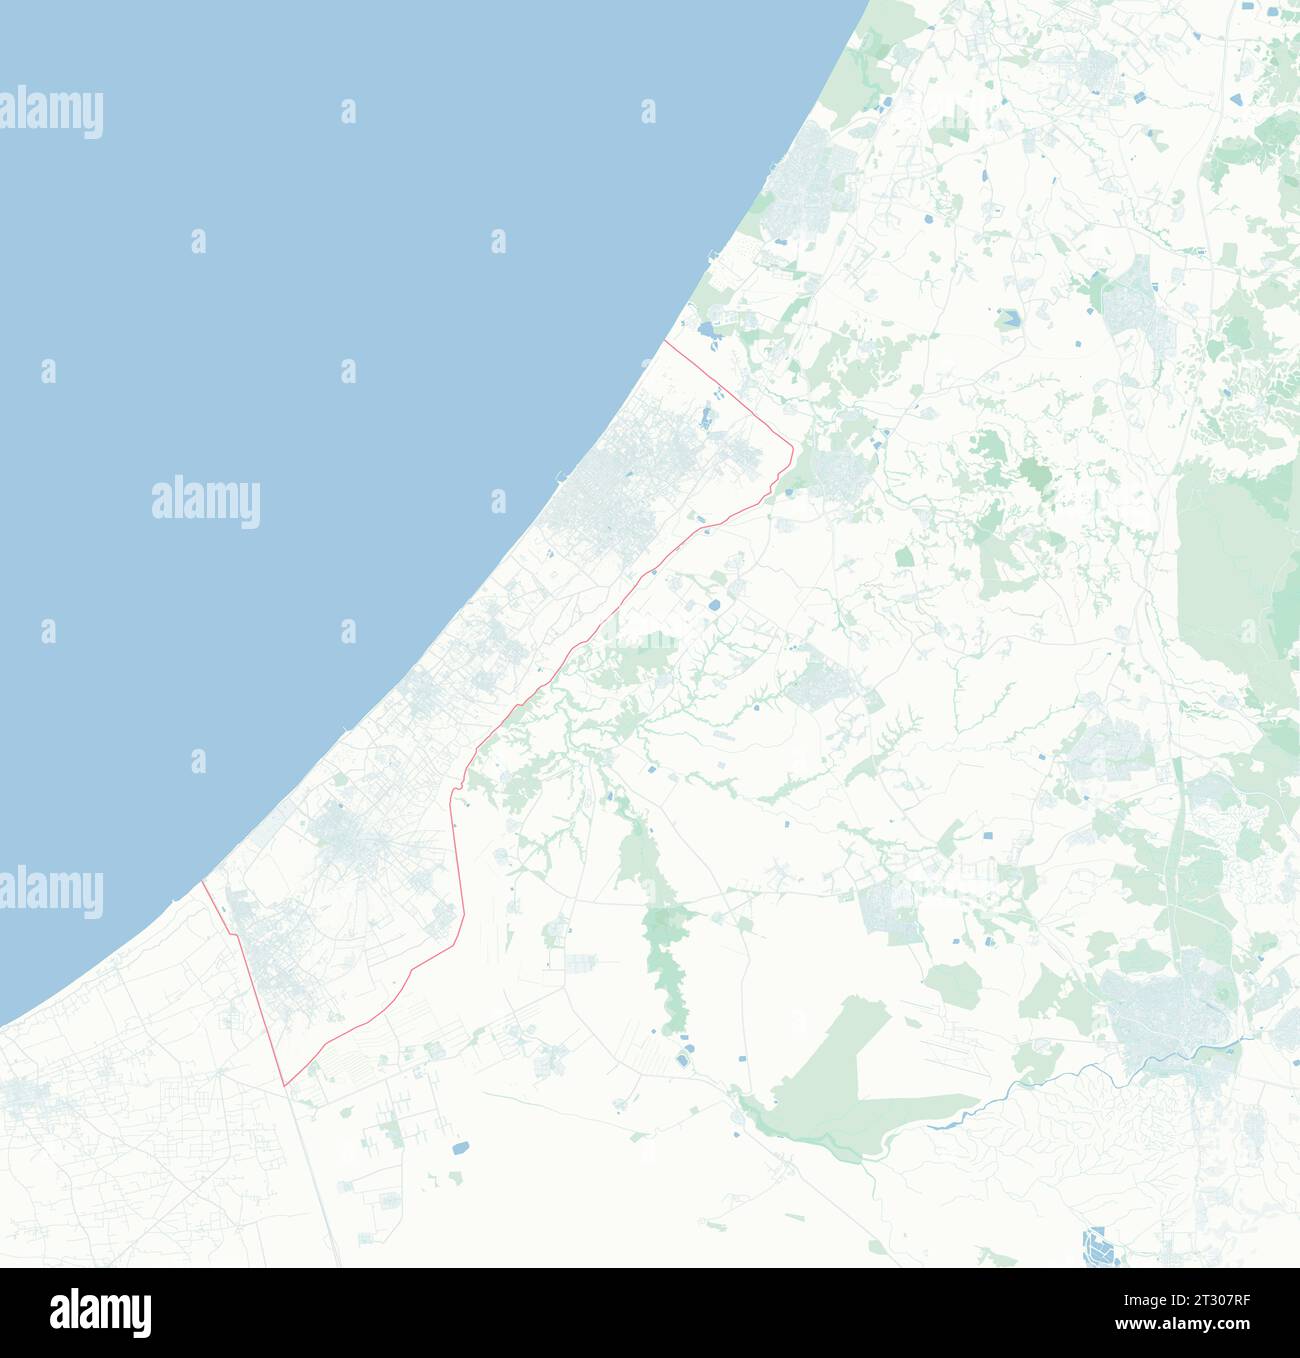 Mappa della Striscia di Gaza, Israele, mappa e confini, rilievi e laghi. Strade ed edifici. Foto Stock